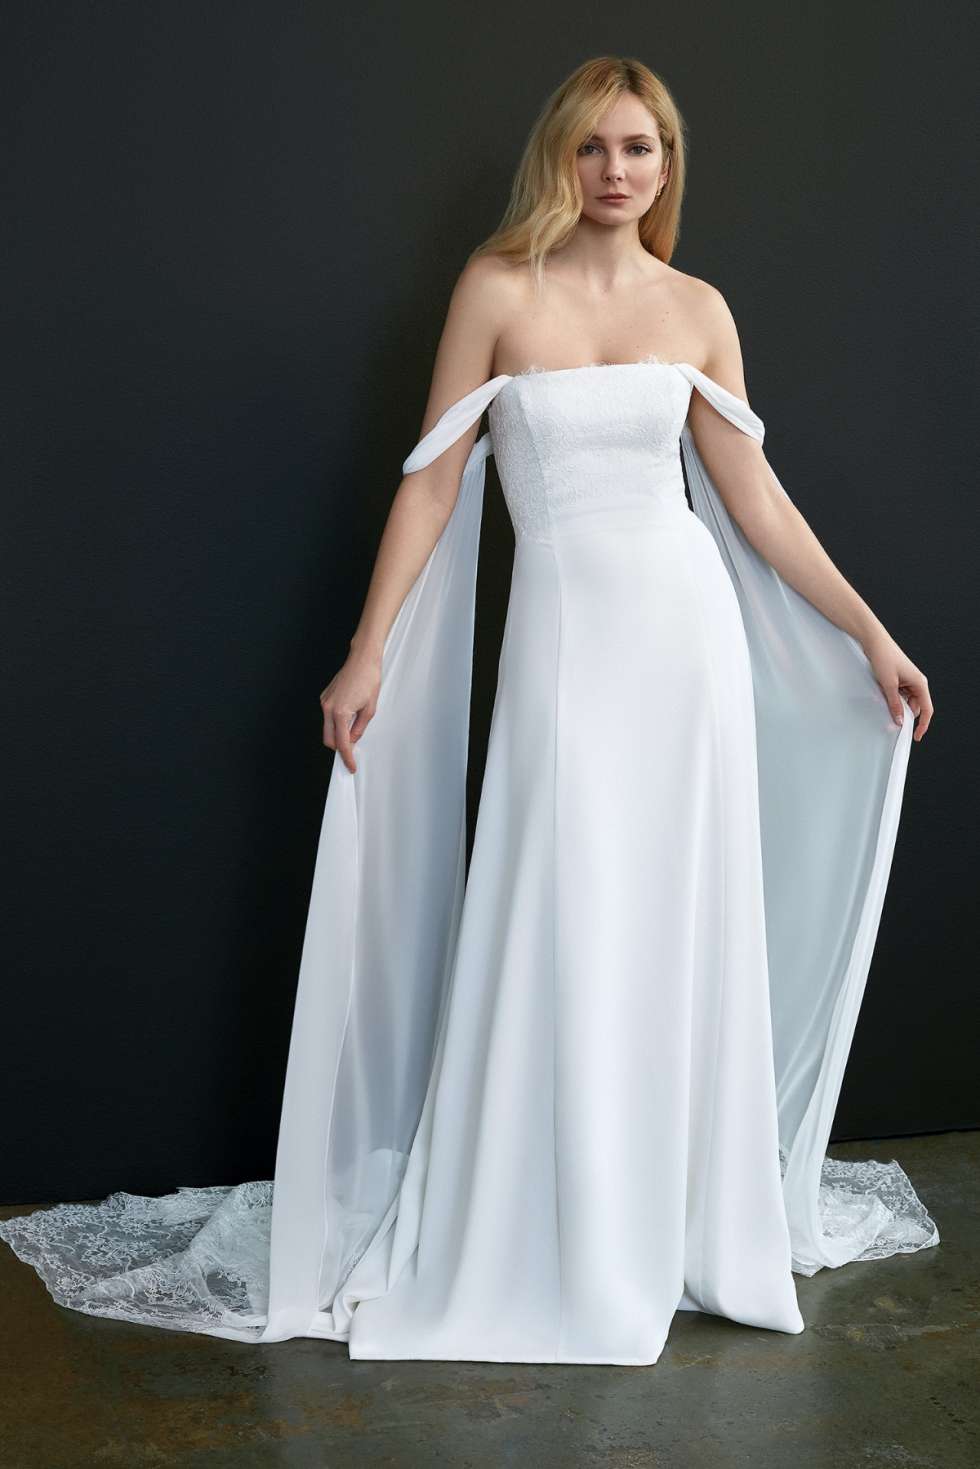 STUNNING WEDDING DRESSES FOR 2021 — Femme On Trend